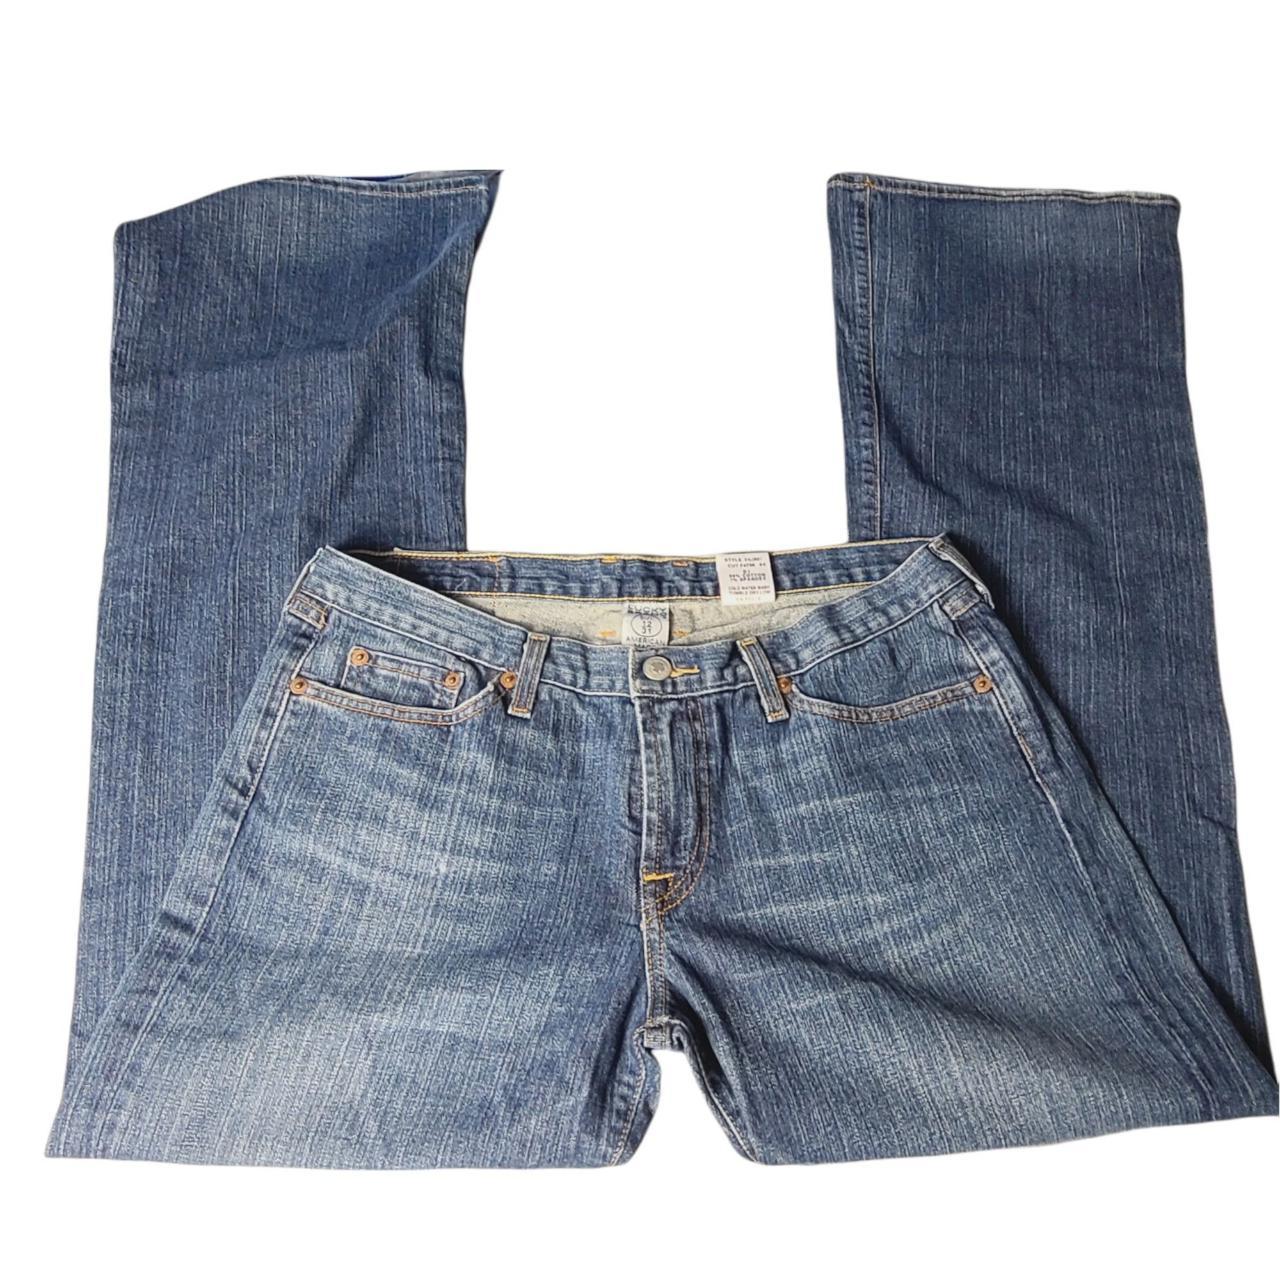 Vintage lucky jeans size 31 - Depop